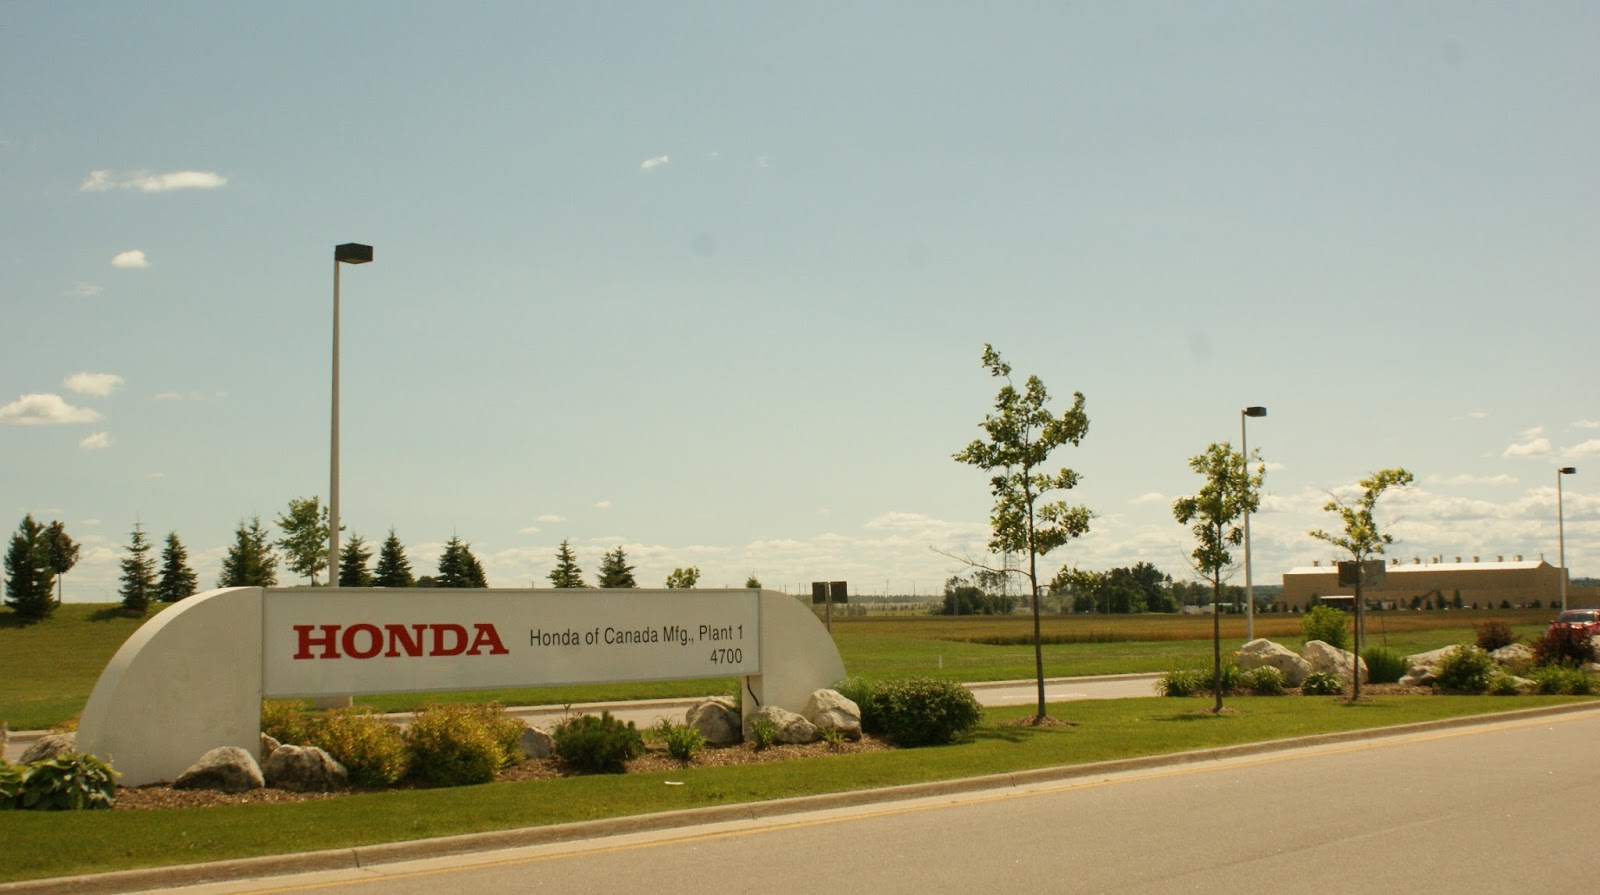 Honda plant in alliston on